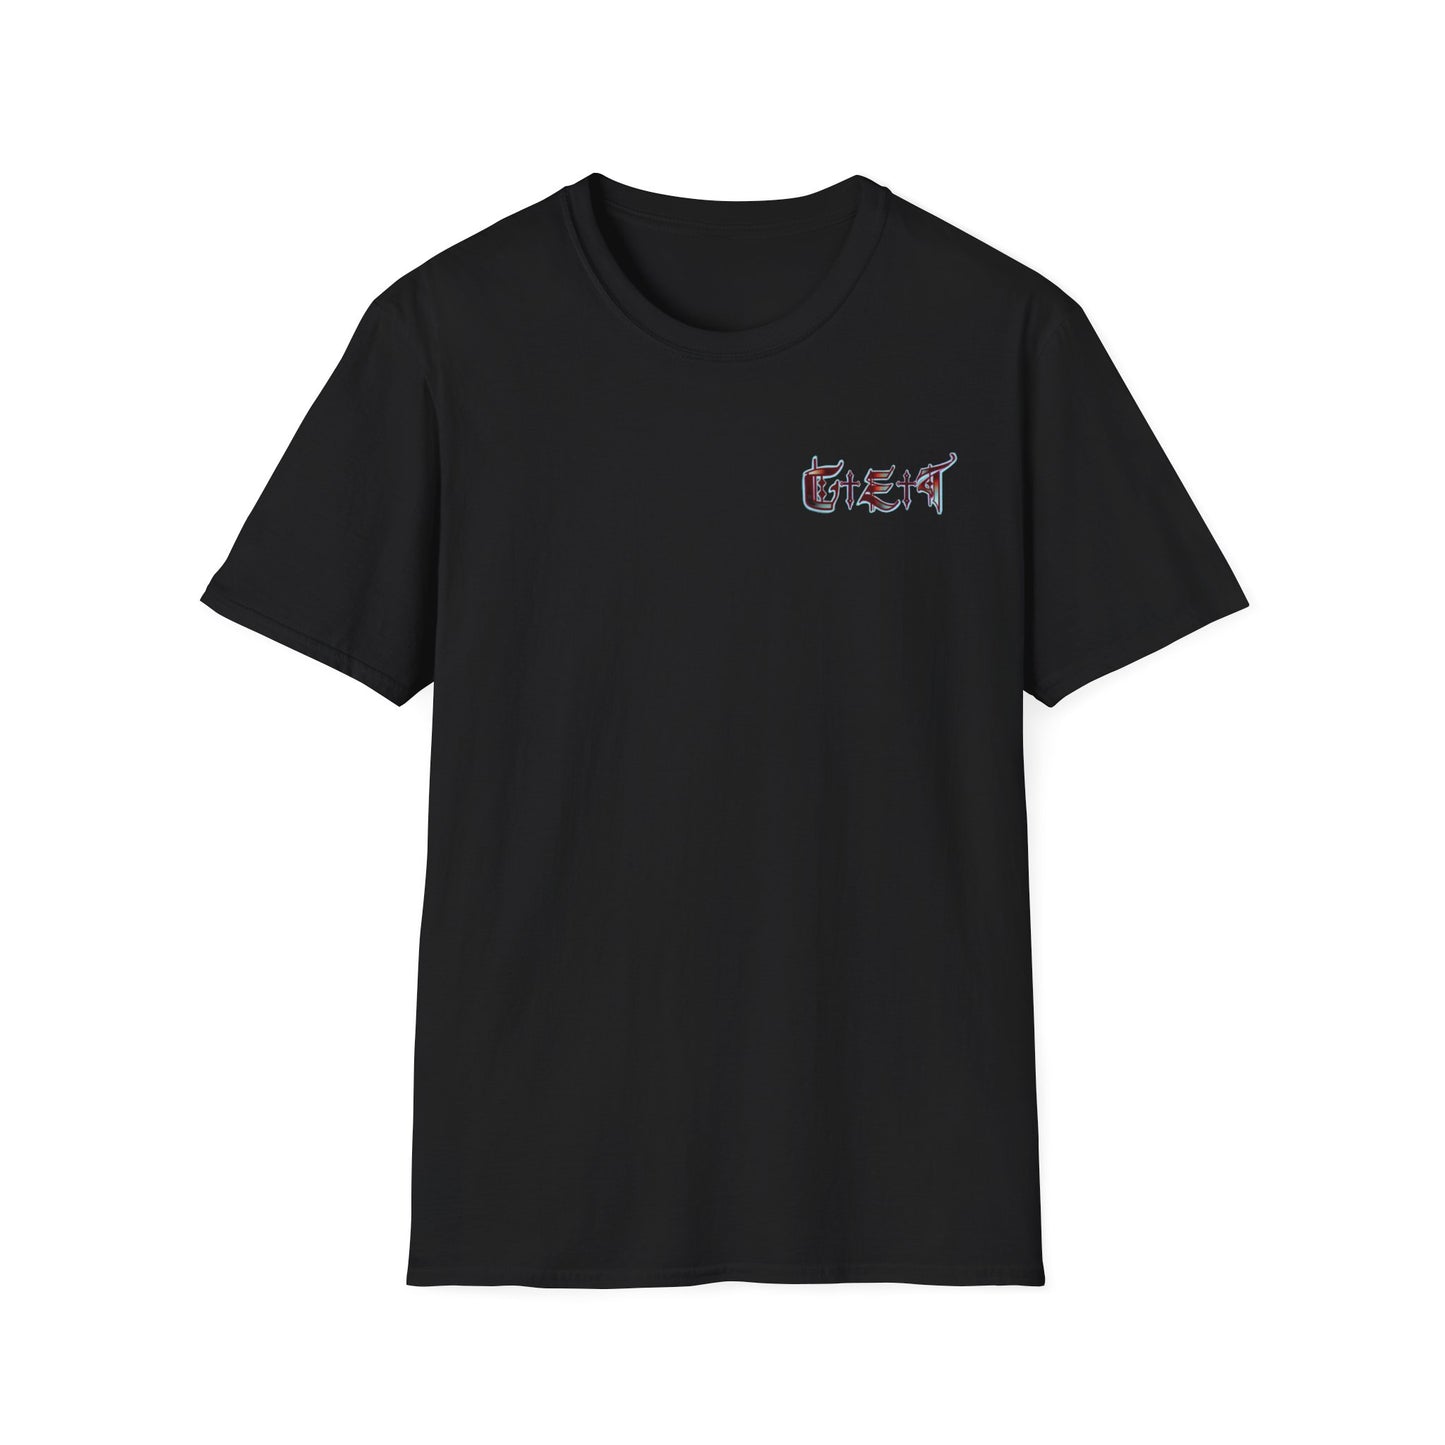 Unisex T-Shirt - Skull Design